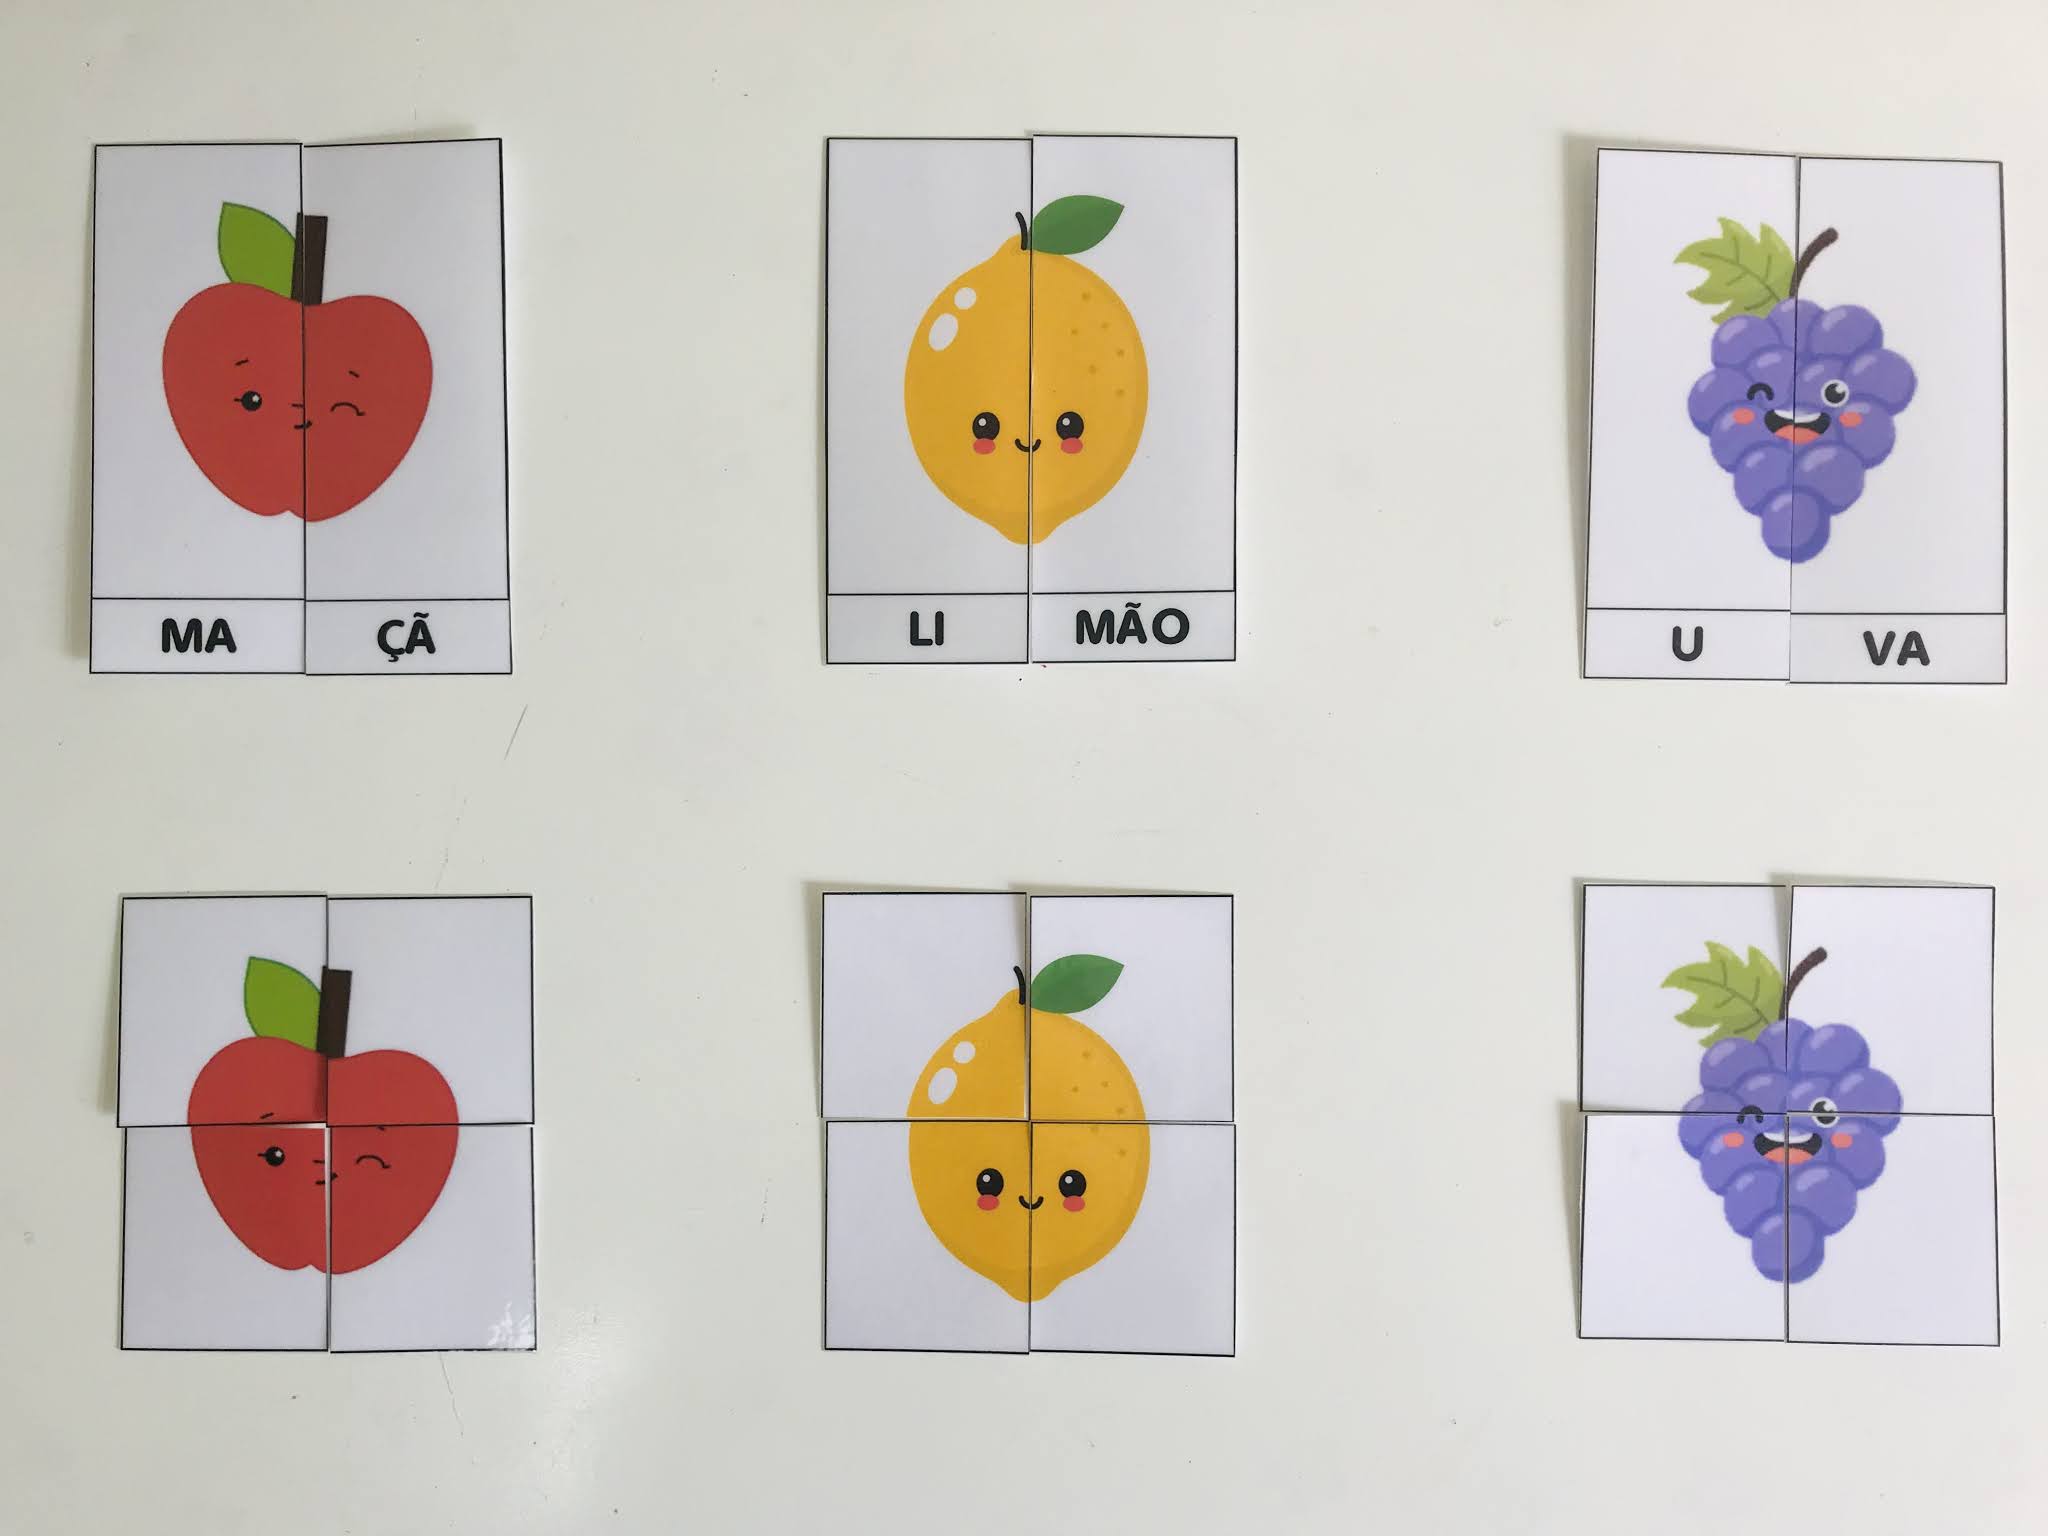 Modelo de jogo de quebra-cabeça de fotos de frutas